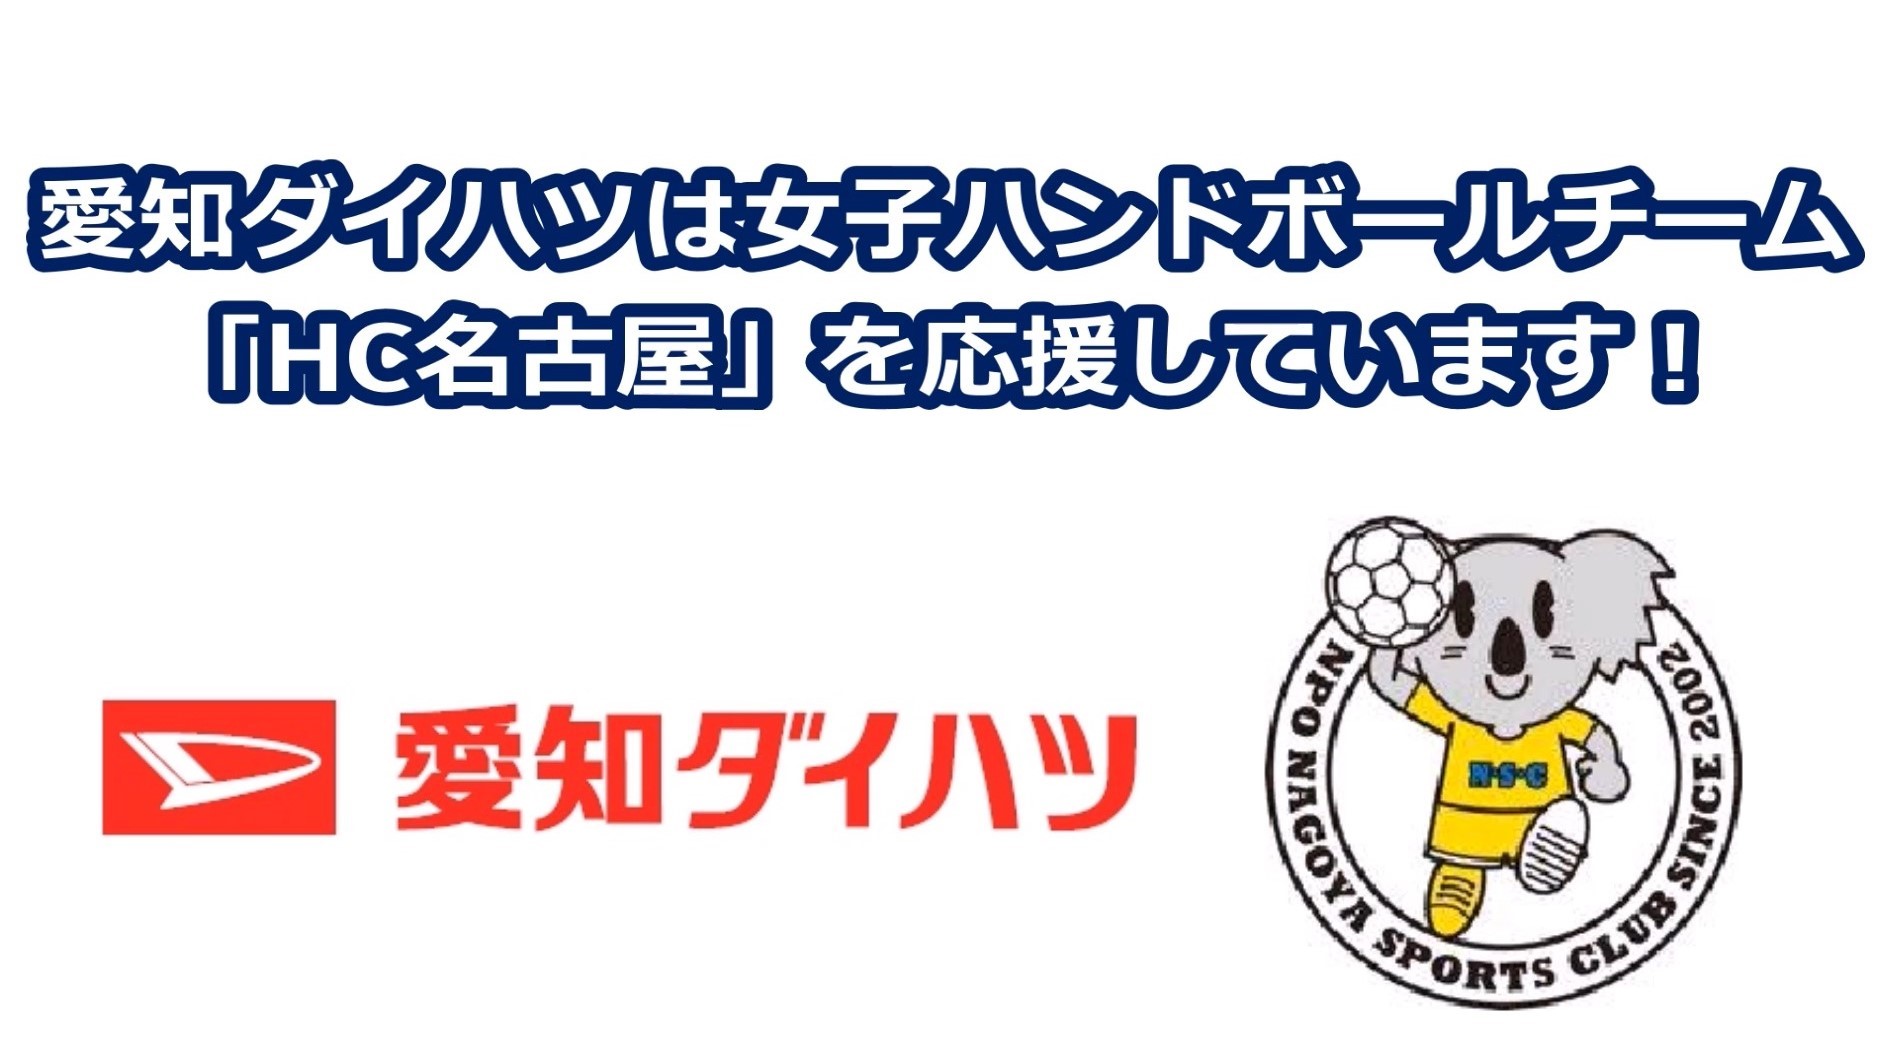 愛知ダイハツは女子ハンドボールチーム「HC名古屋」を応援しています！